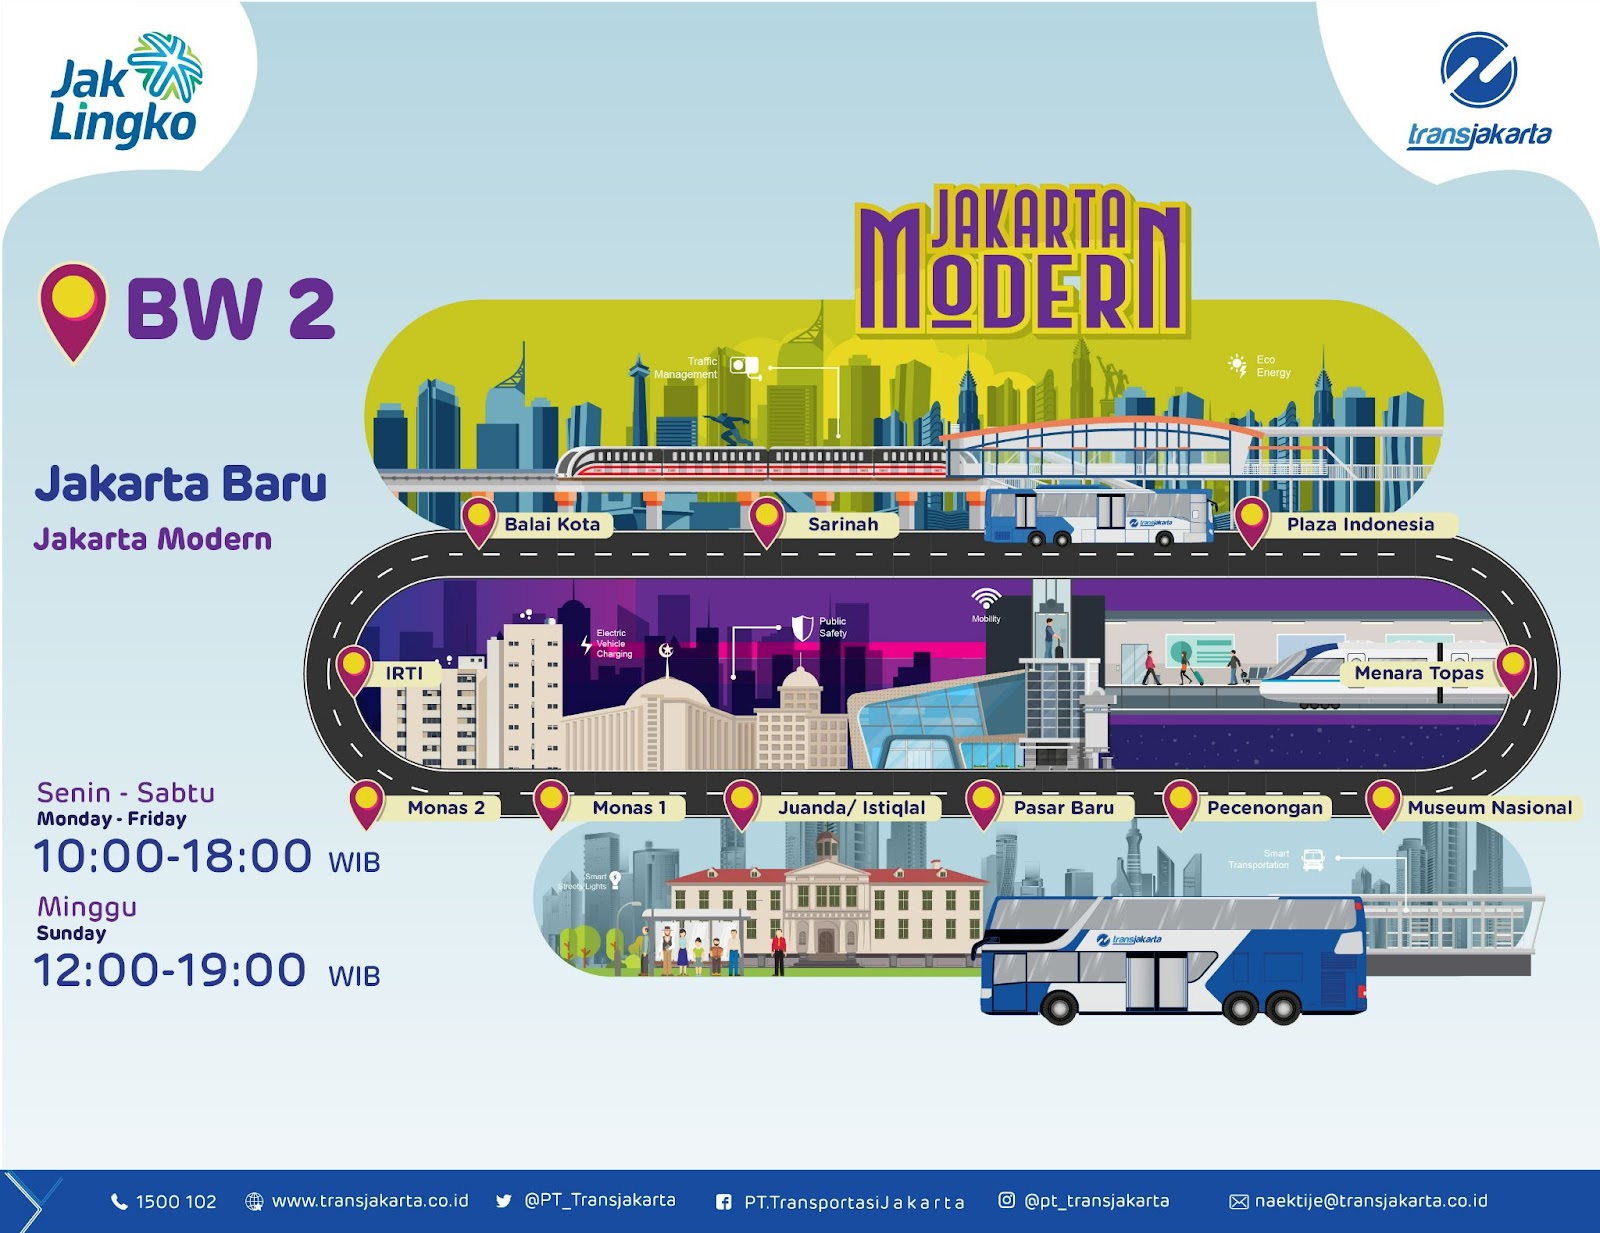 BW2: Jakarta Baru (Jakarta Modern) travel map. Source:&nbsp;transjakarta.co.id